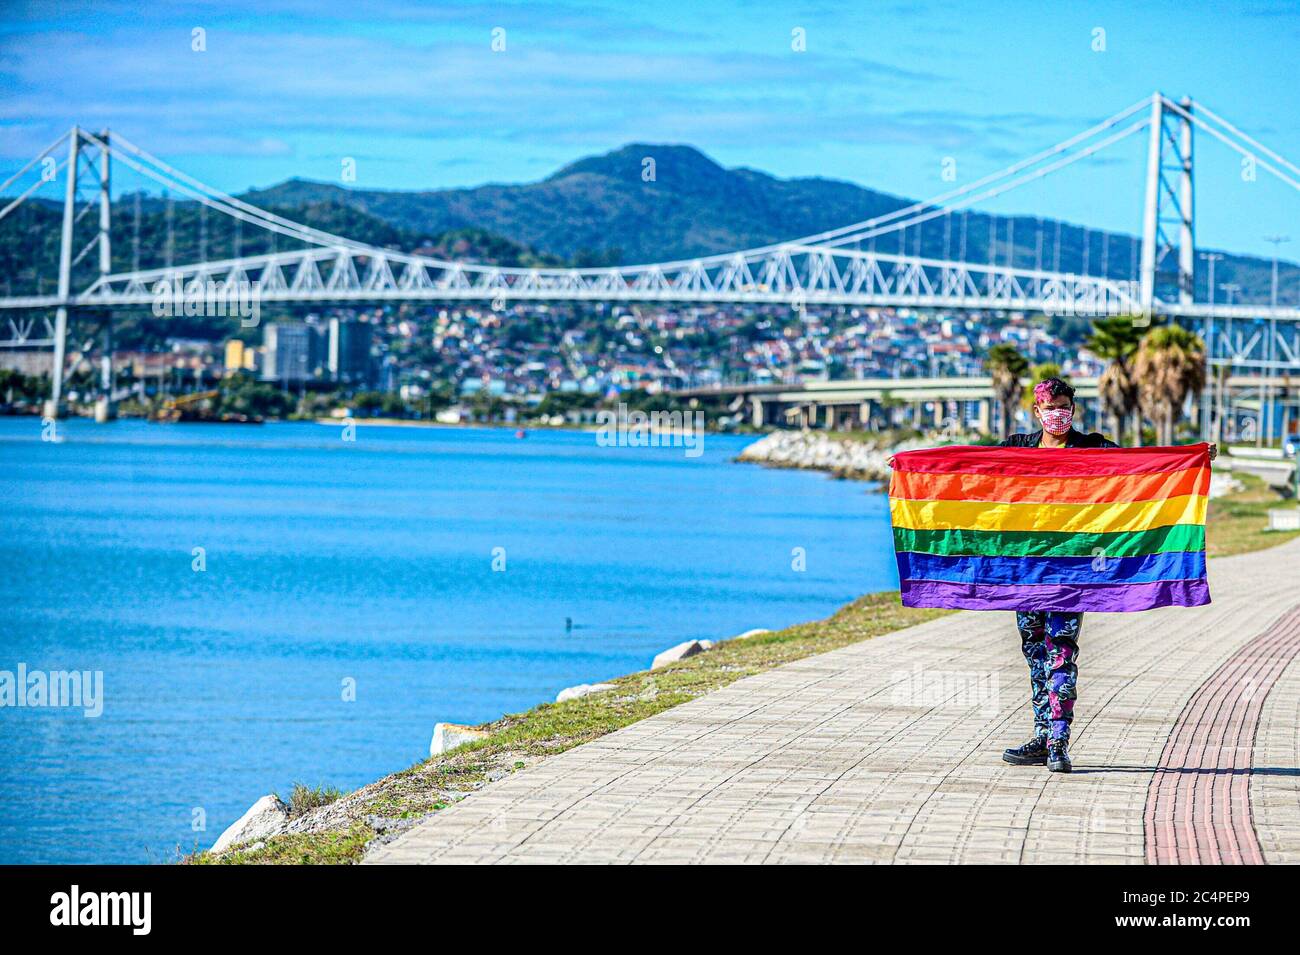 Florianópolis - SC, 28/06/2020 - Neste domingo (28), é comemorado o dia Internacional do Orgulho LGBTQI+. Conhecida por ser a Capital brasileira do tu Foto Stock